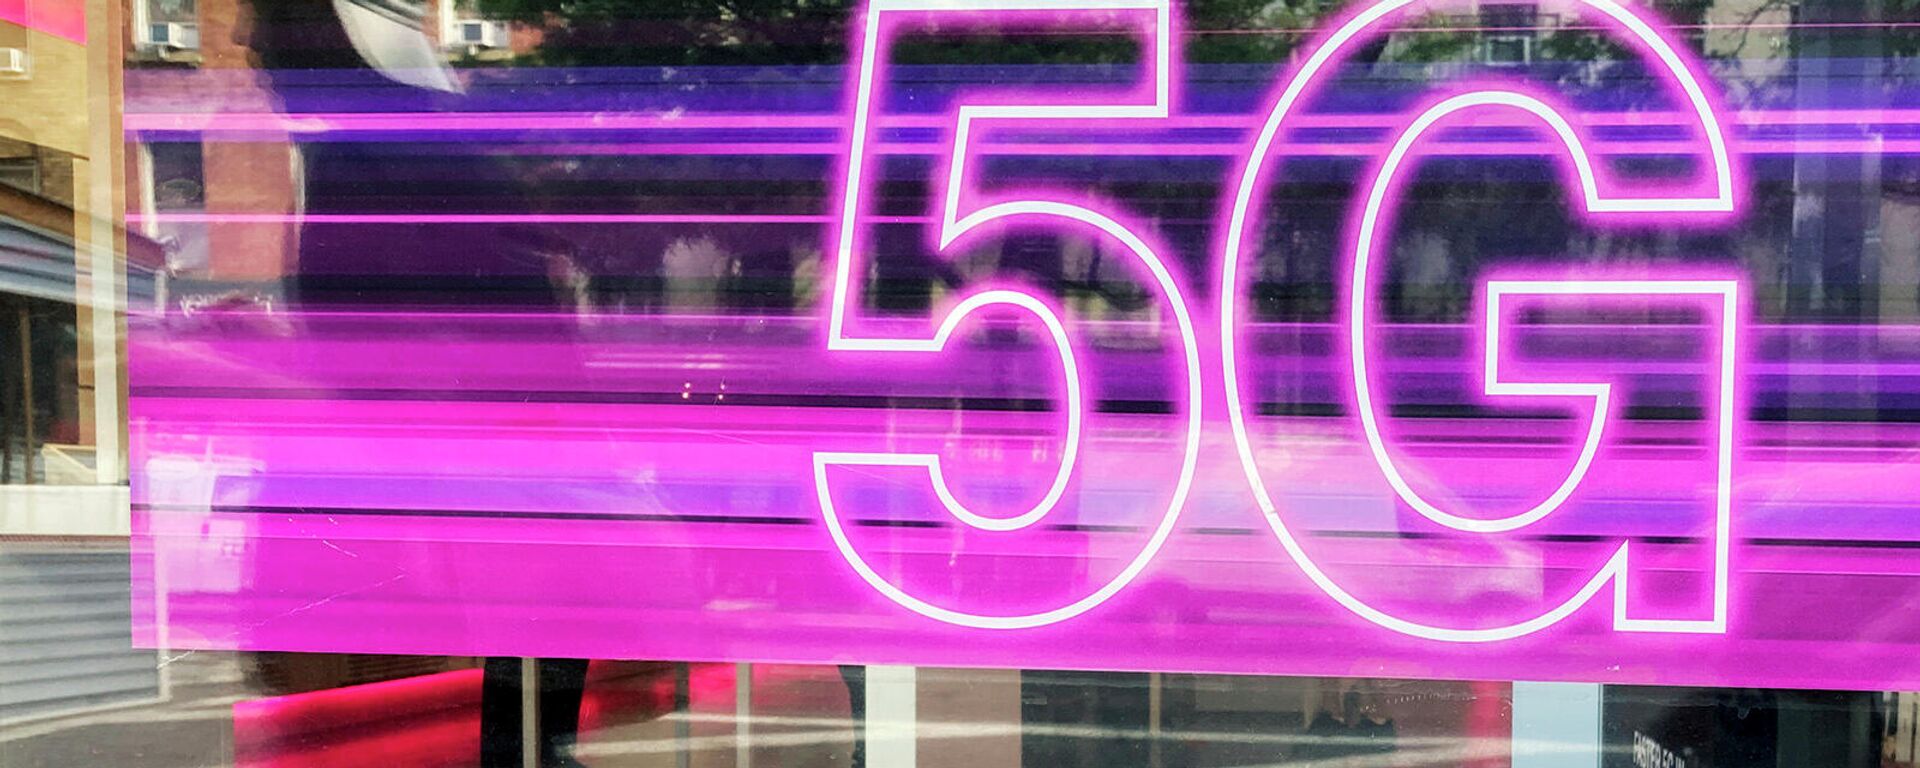 Реклама сотовой связи 5G в витрине магазина T-Mobile в Нью-Йорке - Sputnik Армения, 1920, 21.12.2021